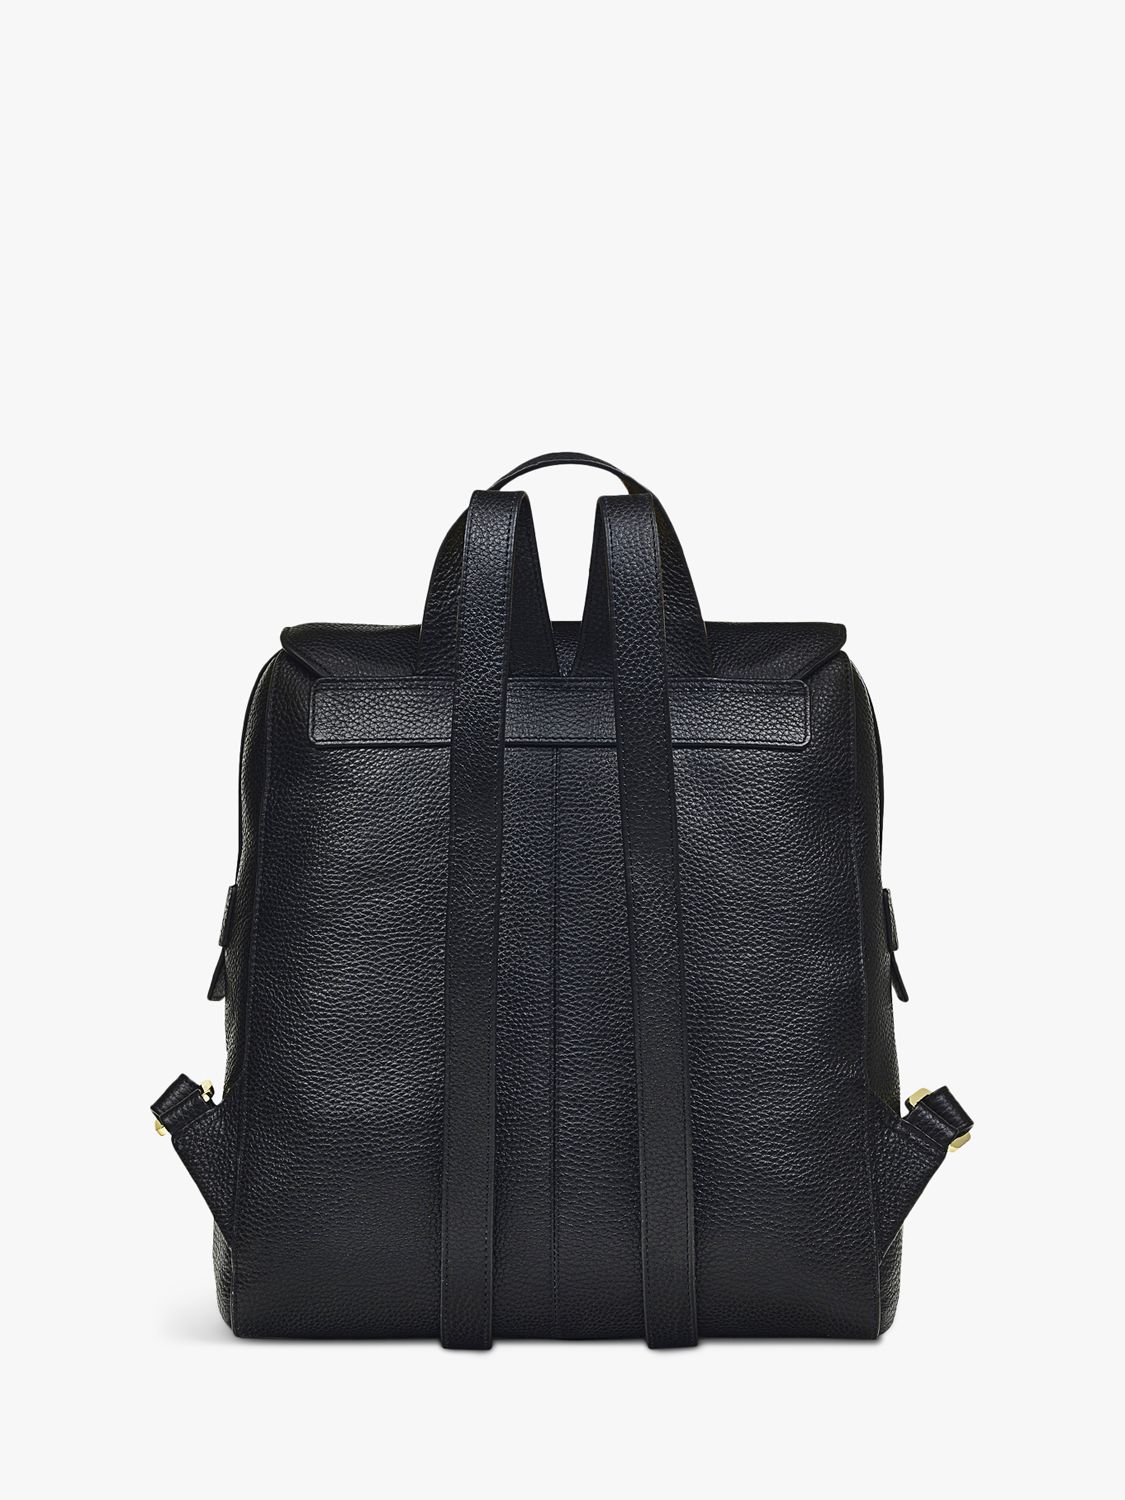 Radley Lorne Large Leather Backpack, Black at John Lewis & Partners